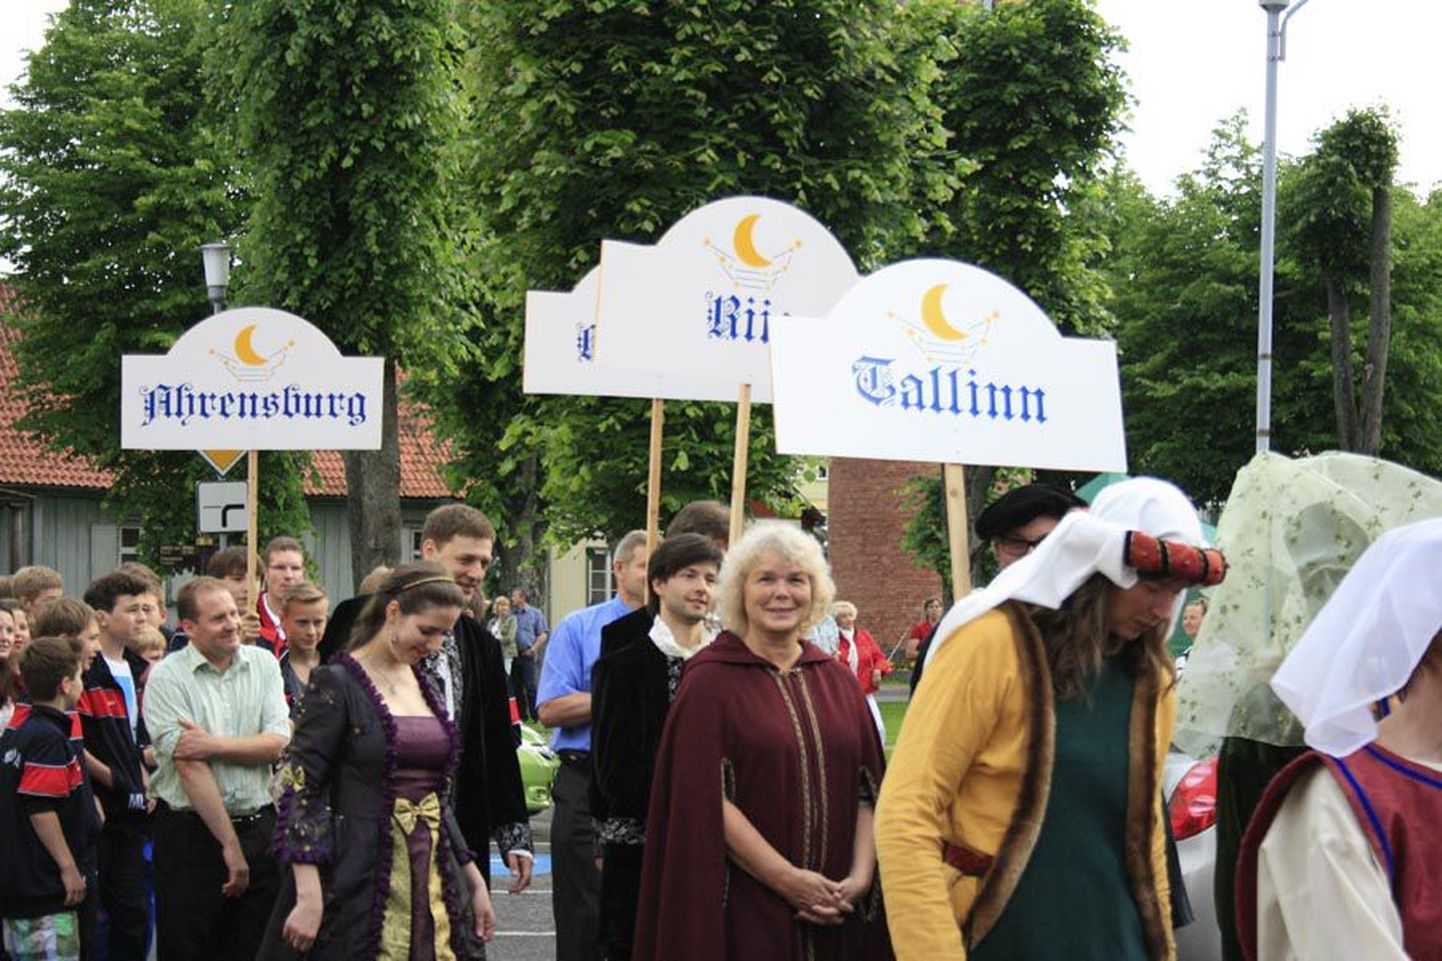 Hansapäevi on Viljandis peetud juba paar aastakümmet, kuid 2015. aasta suvel saabuvad rahvusvahelised hansapäevad, kuhu on oodata tuhandeid külalisi.